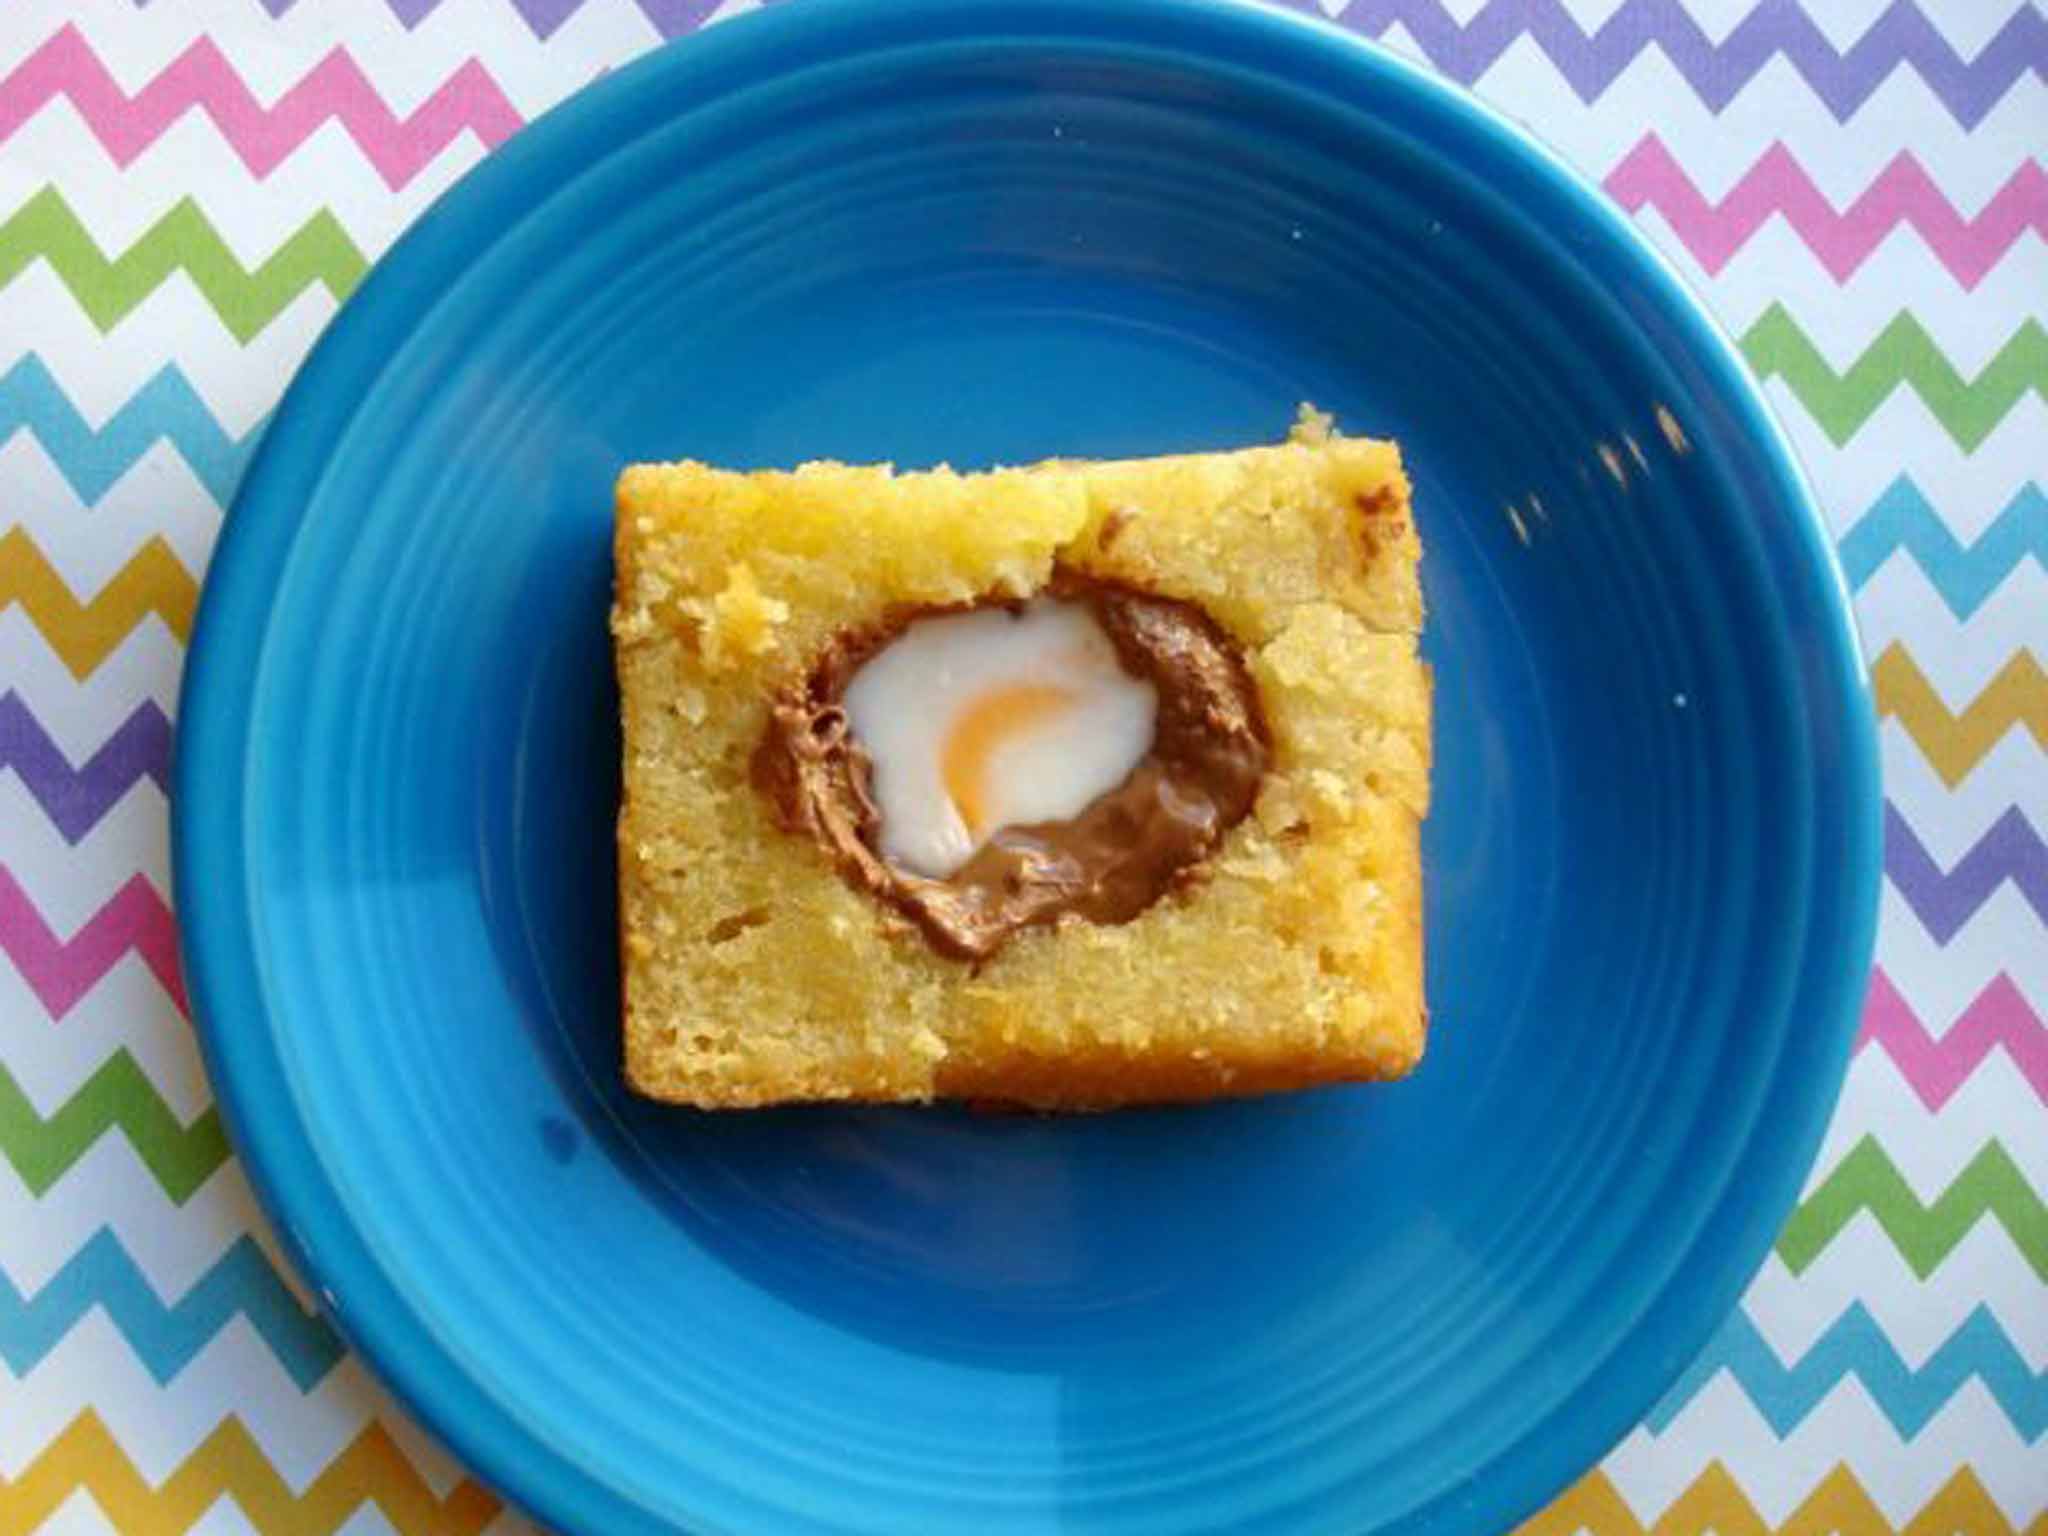 Beyond a yolk: a Creme Egg cake